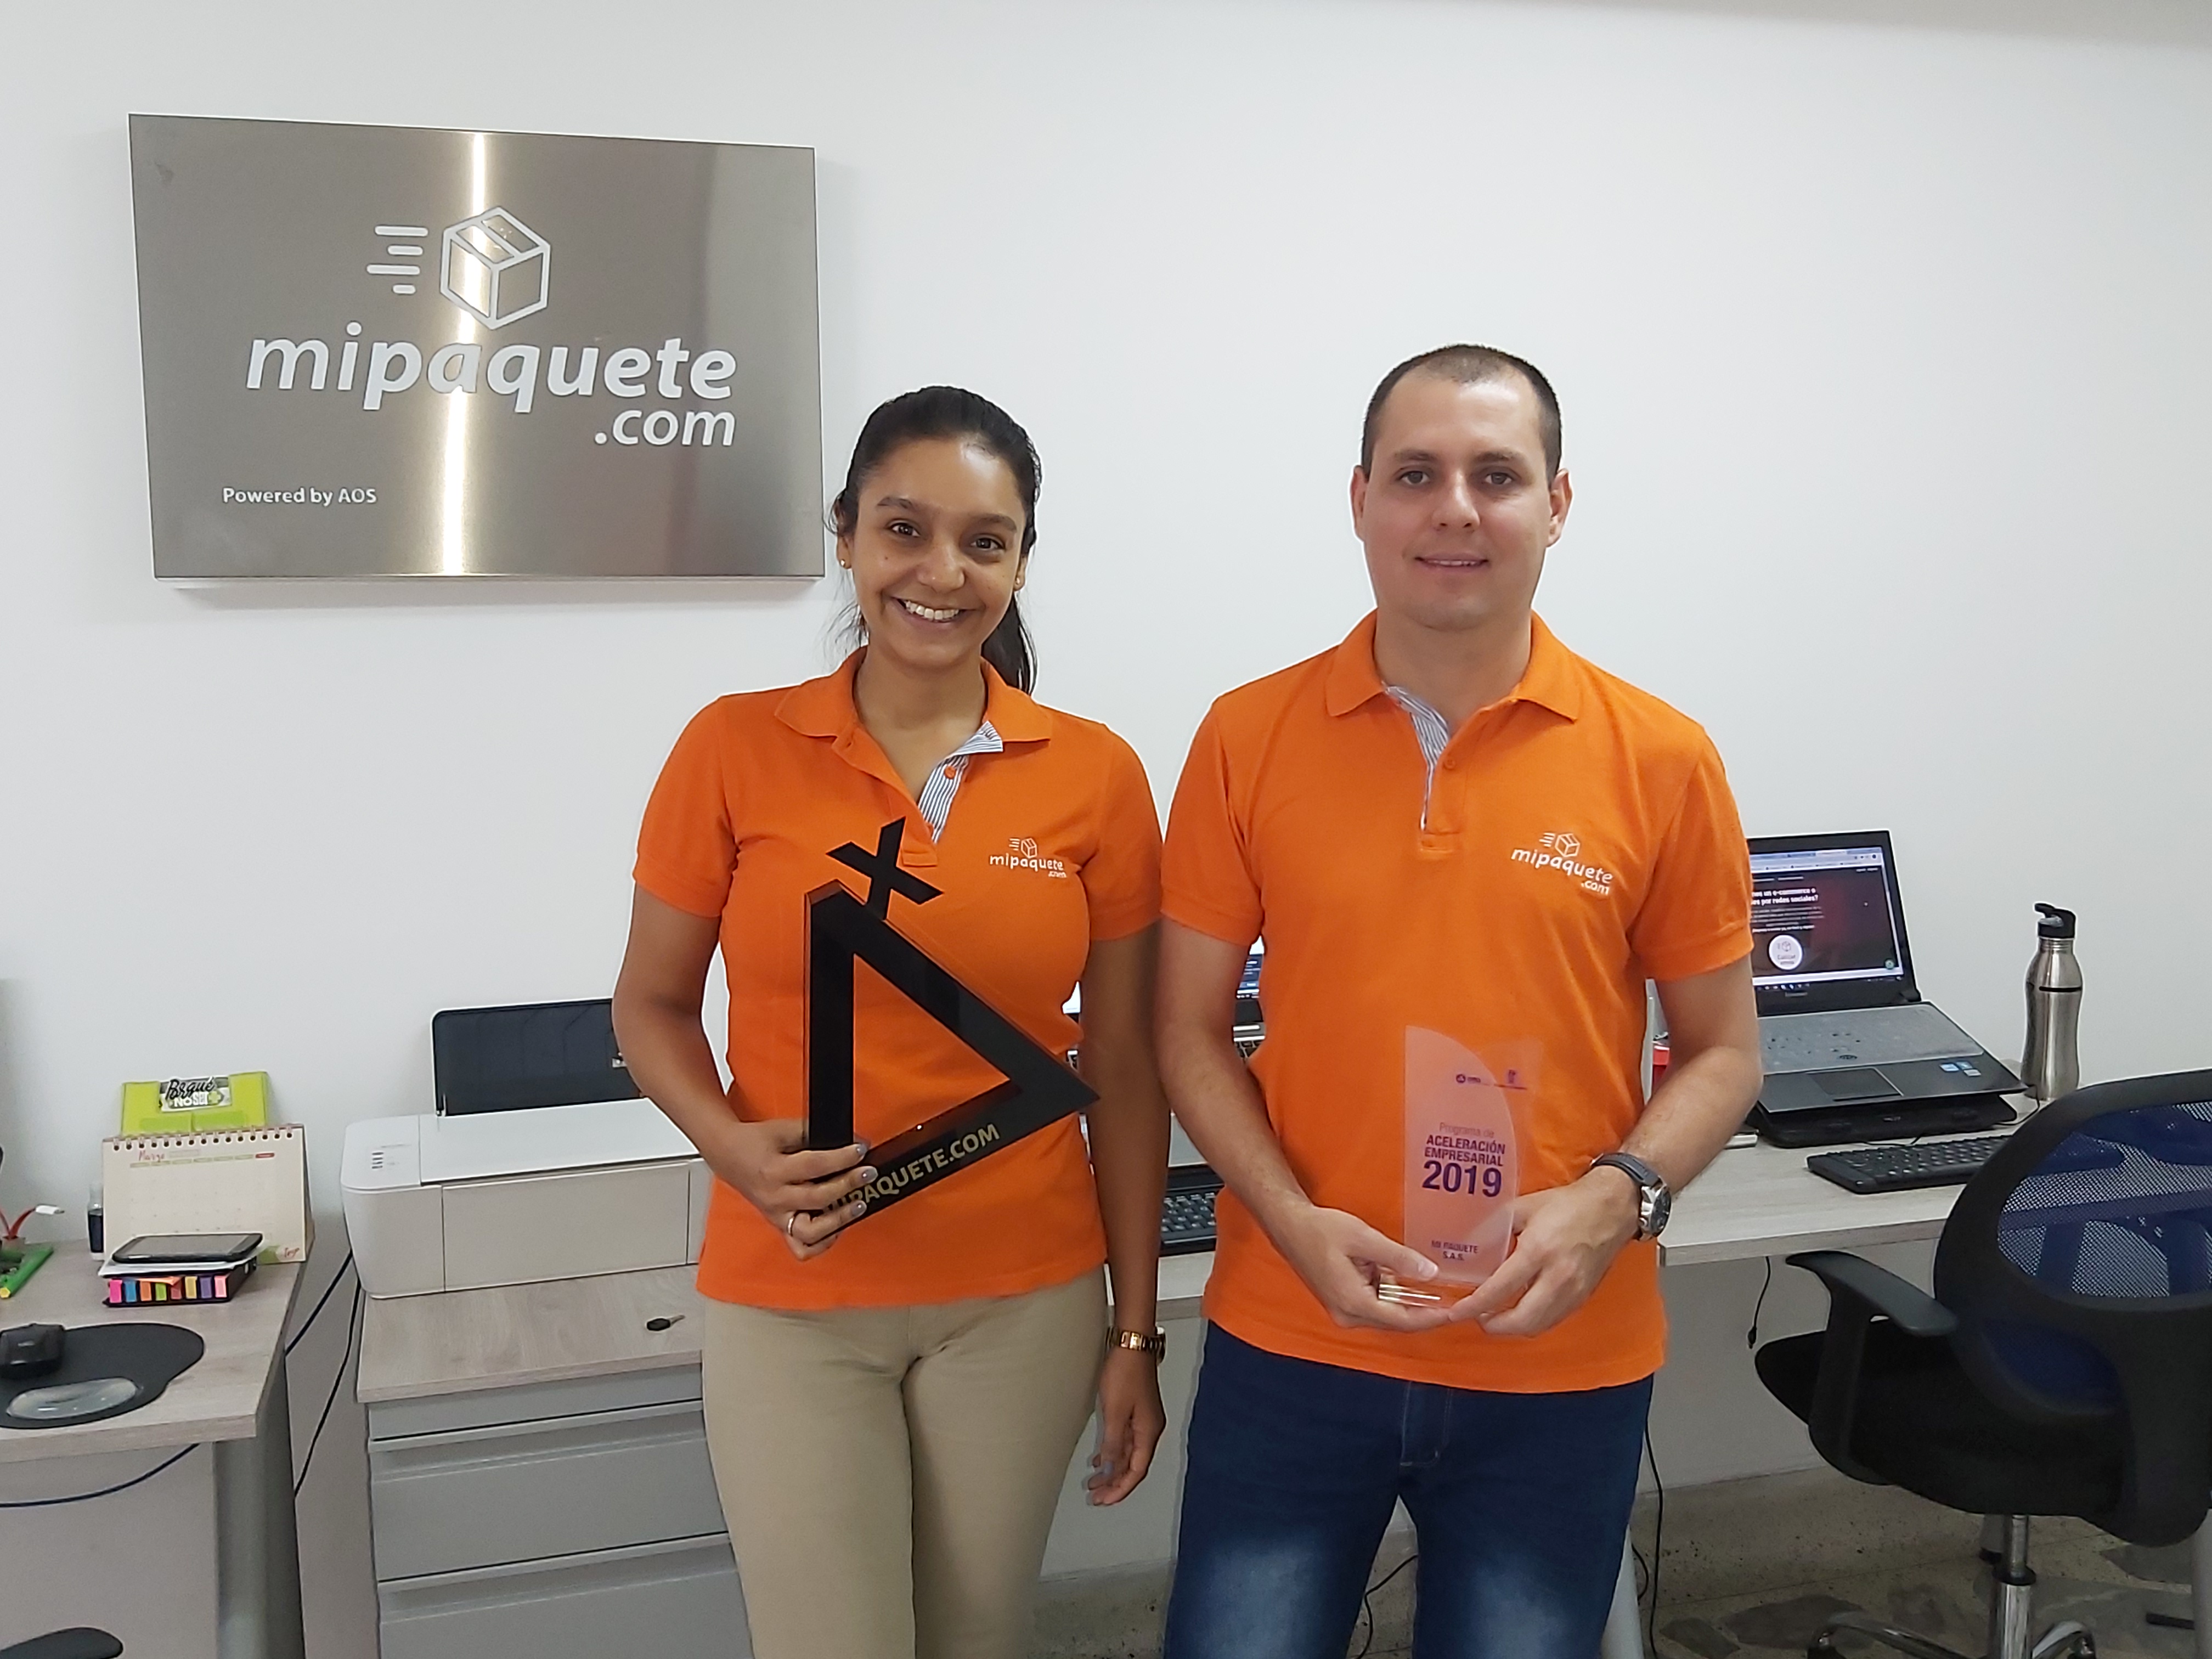 Los emprendedores como Carolina Ruiz y Sergio Vargas, fundadores de mipaquete.com, han sido reconocidos por organizaciones públicas y privadas del ecosistema de emprendimiento colombiano.